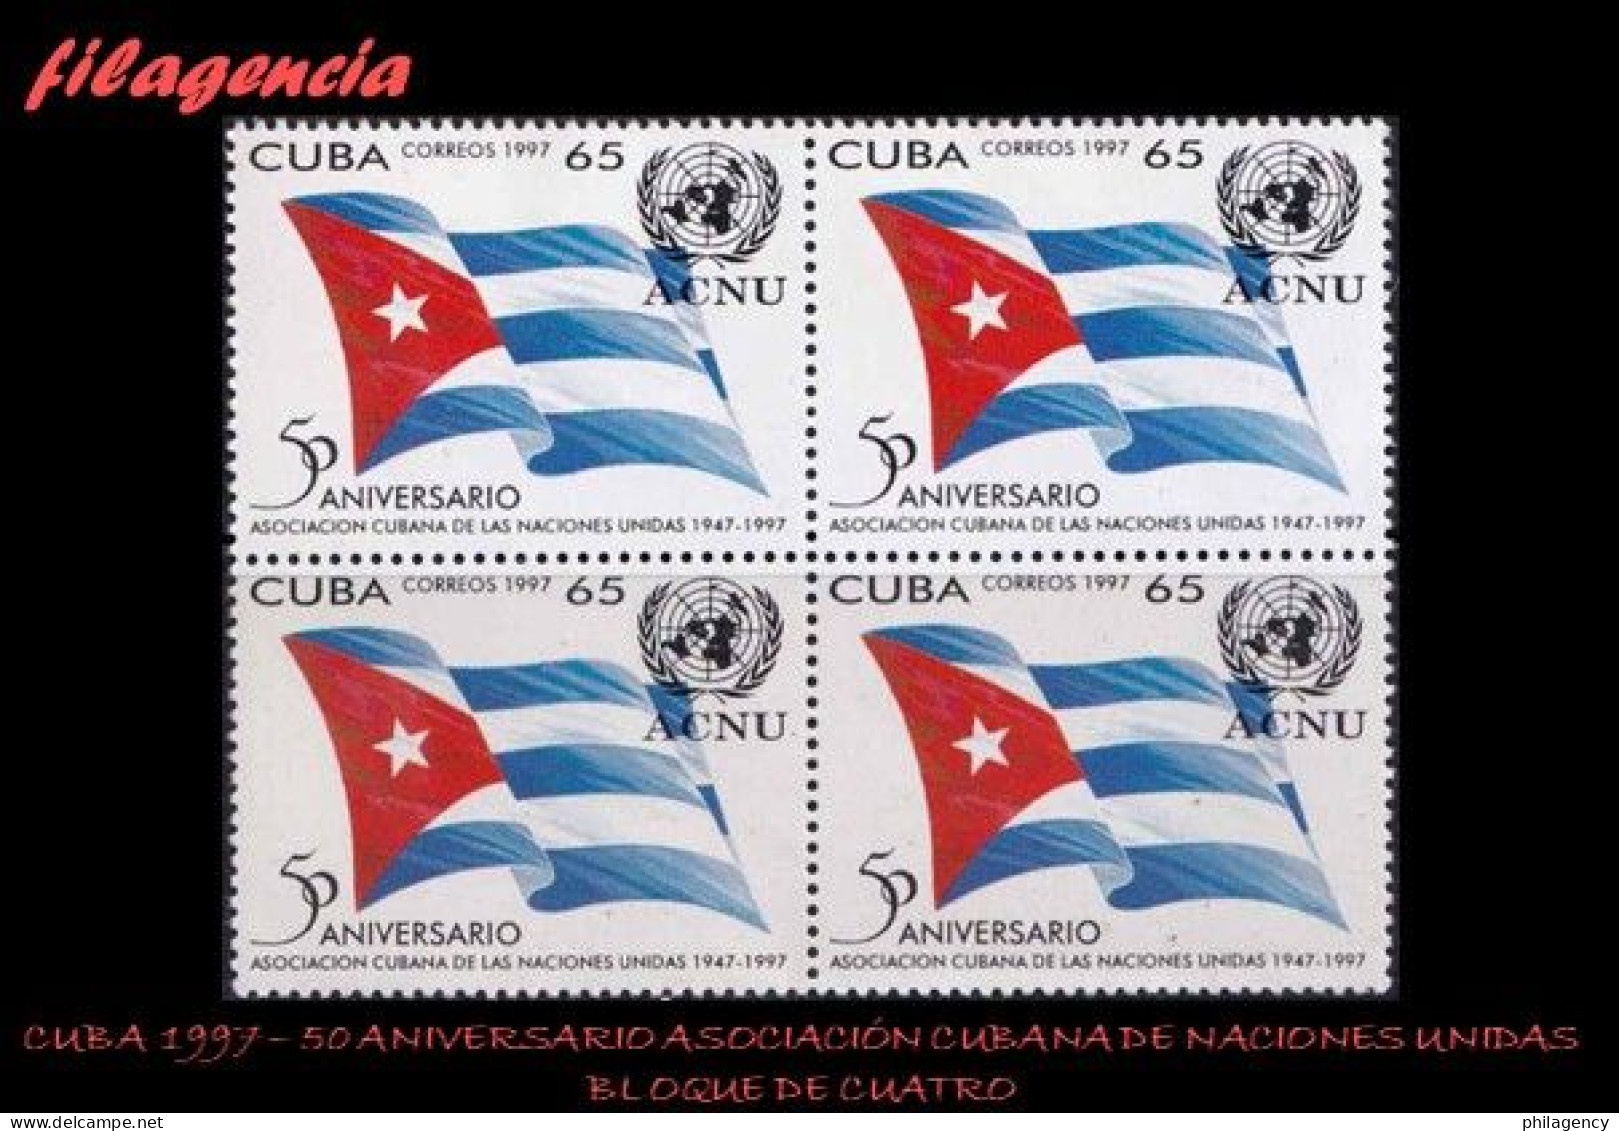 CUBA. BLOQUES DE CUATRO. 1997-13 CINCUENTENARIO DE LA ASOCIACIÓN CUBANA DE NACIONES UNIDAS - Nuovi